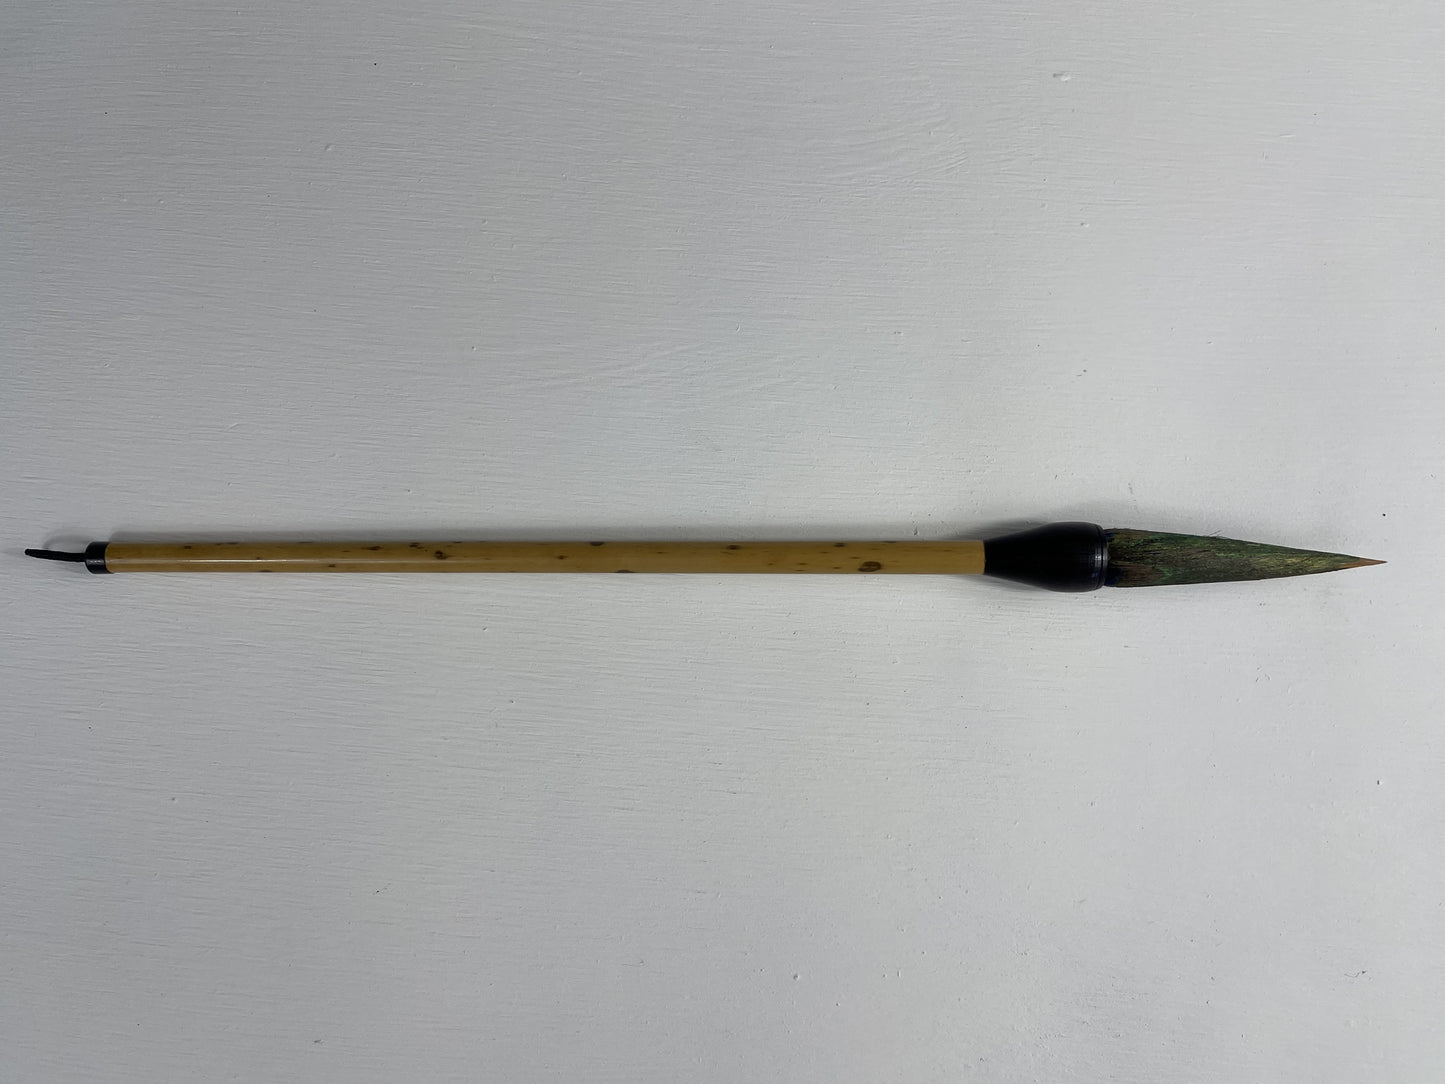 Mottled Bamboo, Peacock 70mm